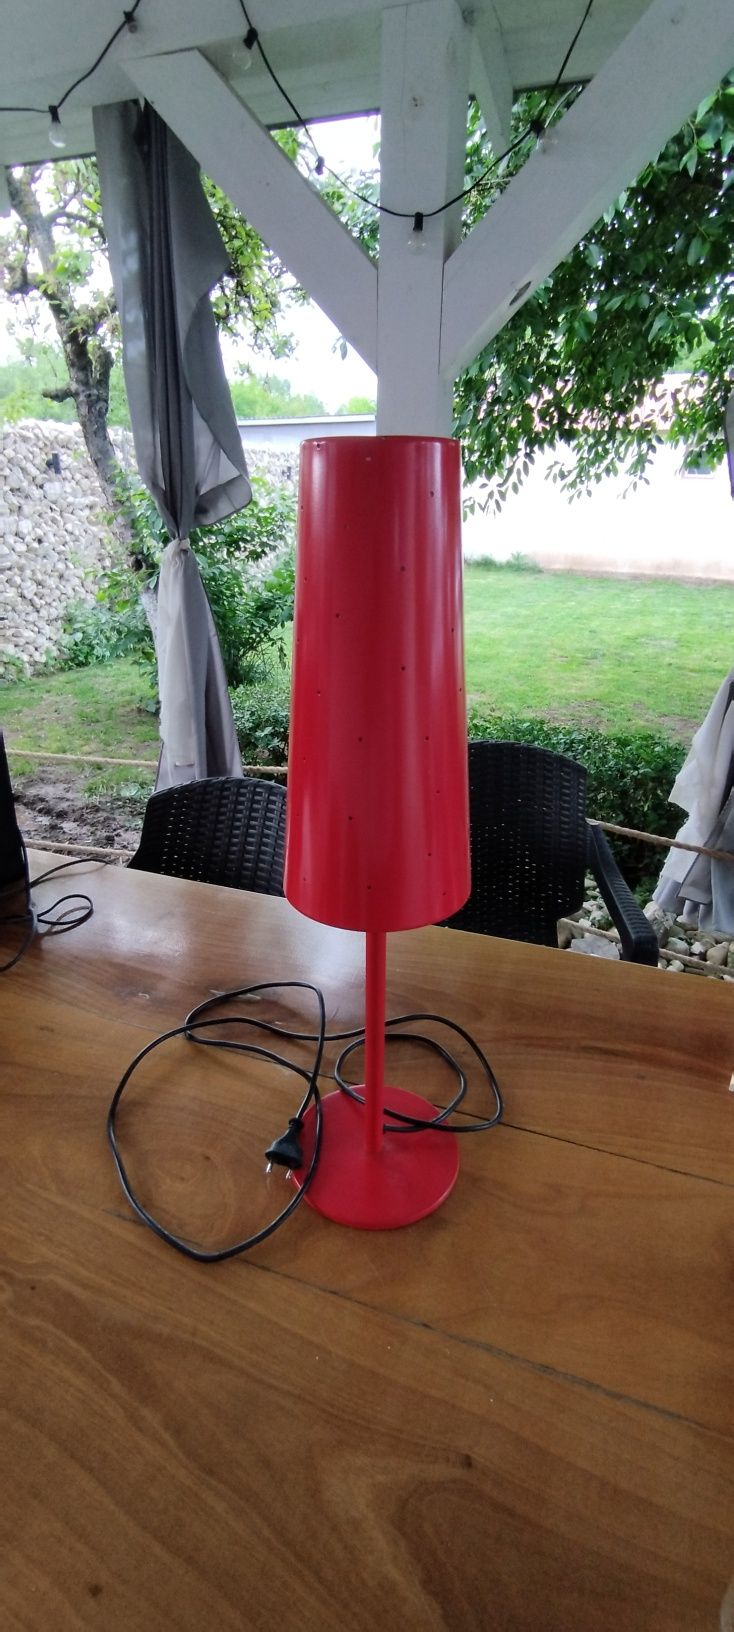 Lampa / veioza roșie 60 / perfect funcțională